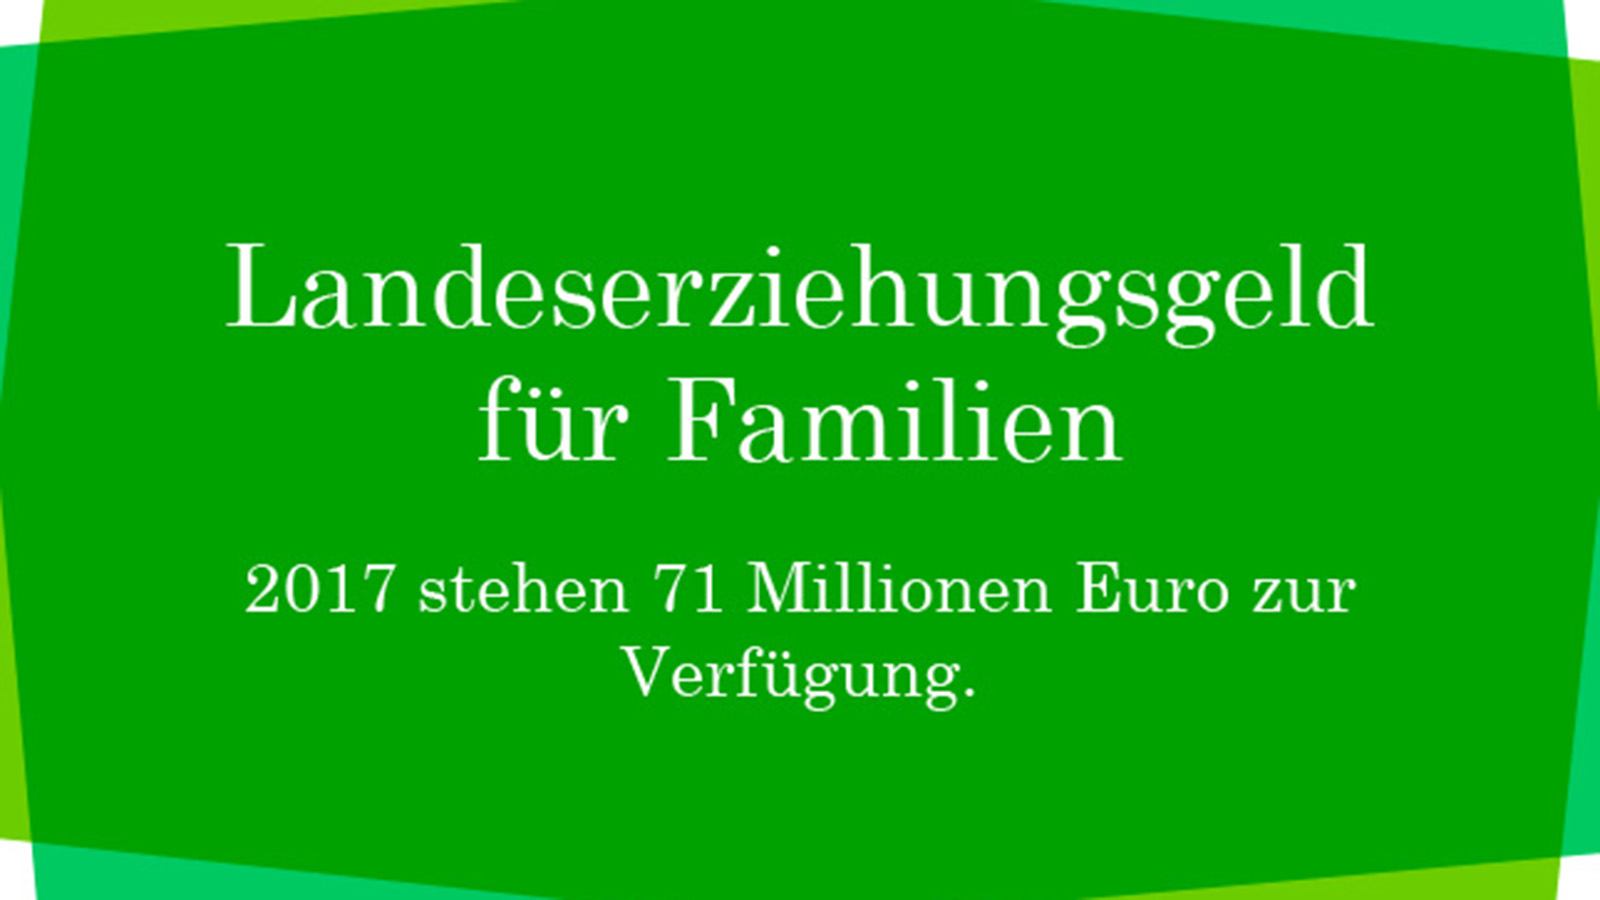 Fakten zum Beitrag "Familienland Bayern"